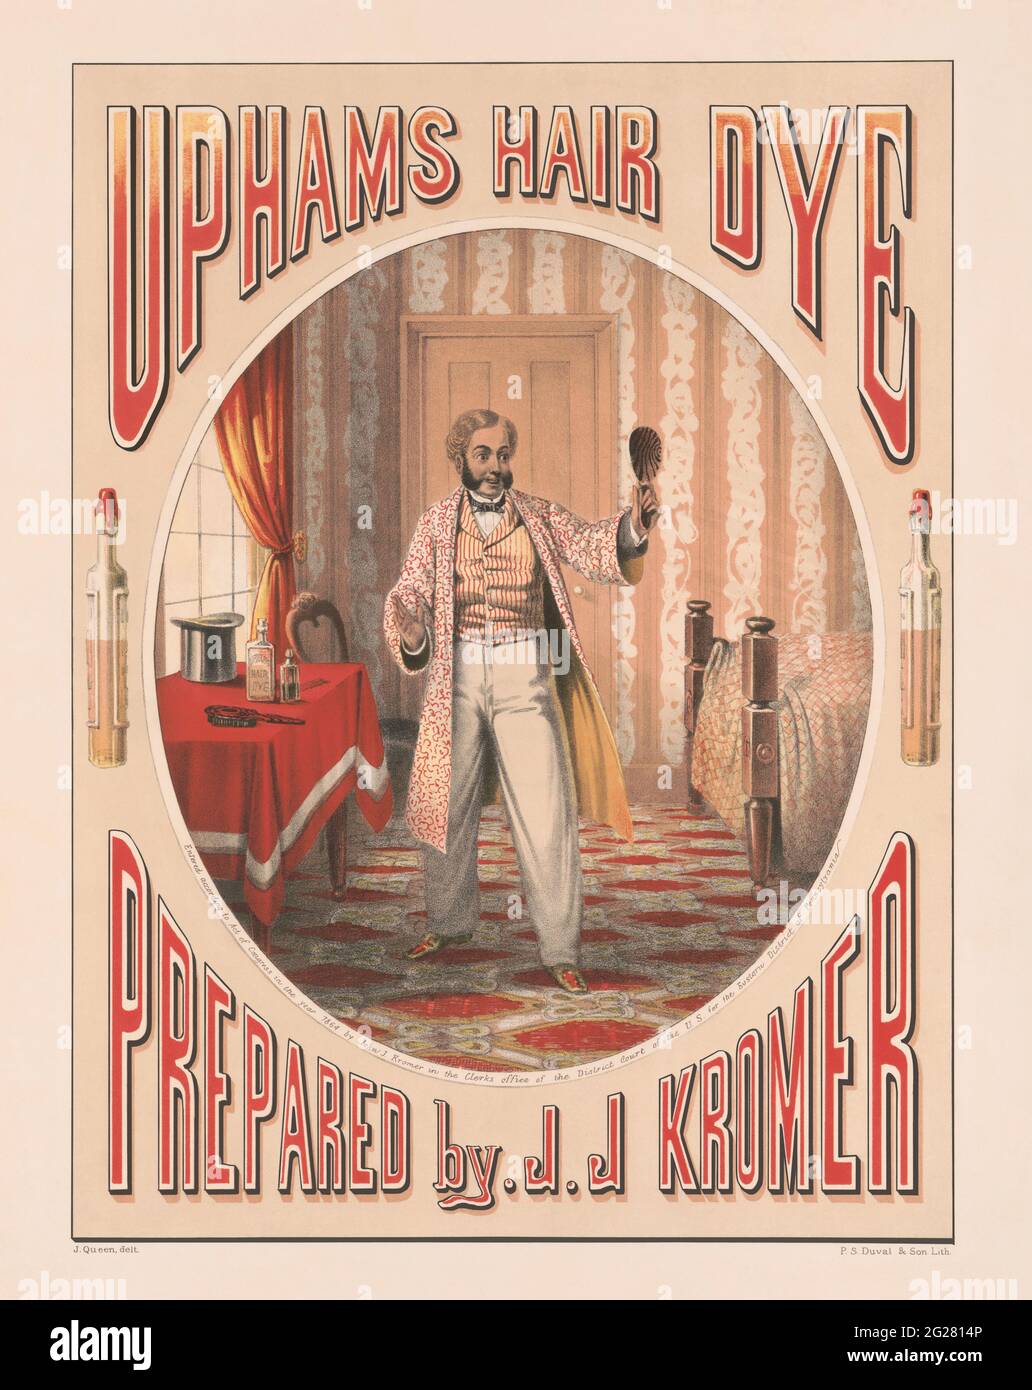 Publicité vintage pour le colorant capillaire Uphams préparée par J.J. Kromer, vers 1864 Banque D'Images